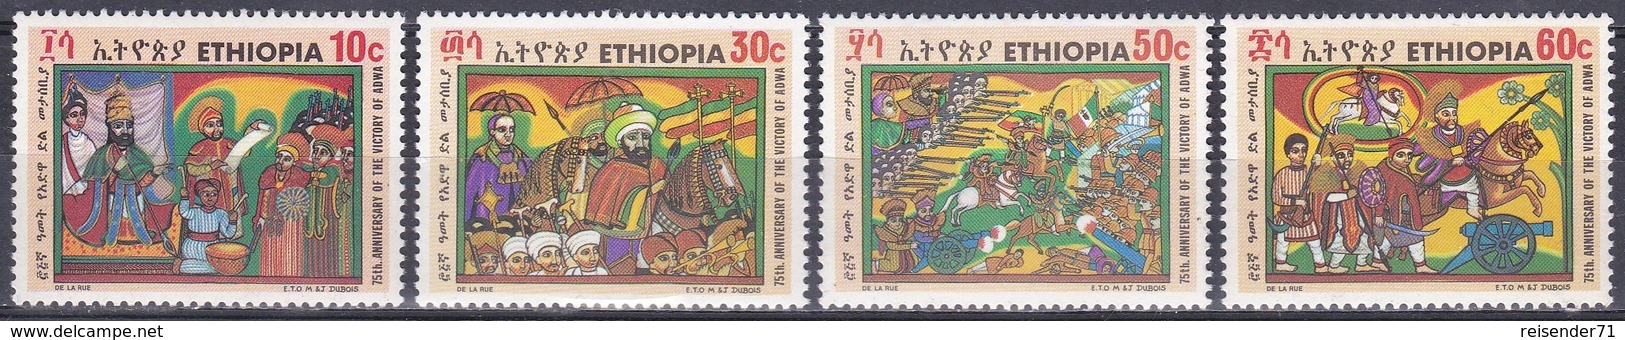 Äthiopien Ethiopia 1971 Geschichte History Schlachten Battles Königshäuser Royals Kaiser Menelik II. Adua, Mi. 679-2 ** - Ethiopie